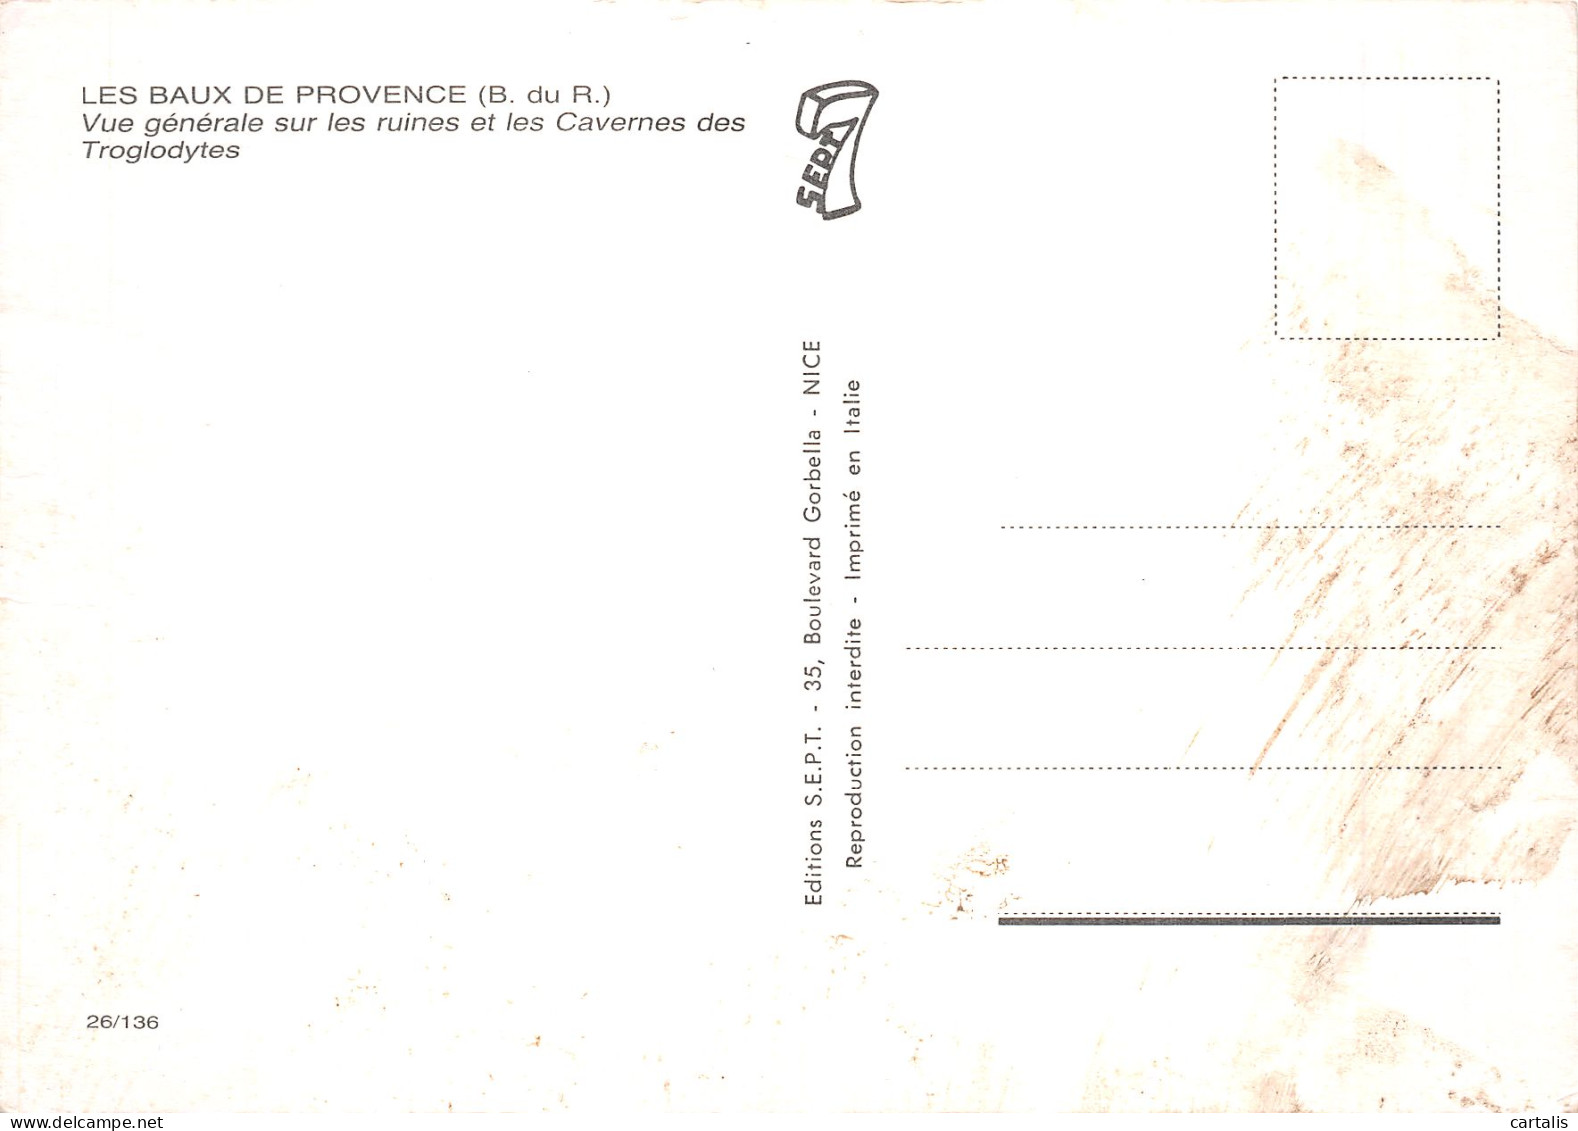 13-LES BAUX DE PROVENCE-N° 4457-A/0385 - Les-Baux-de-Provence